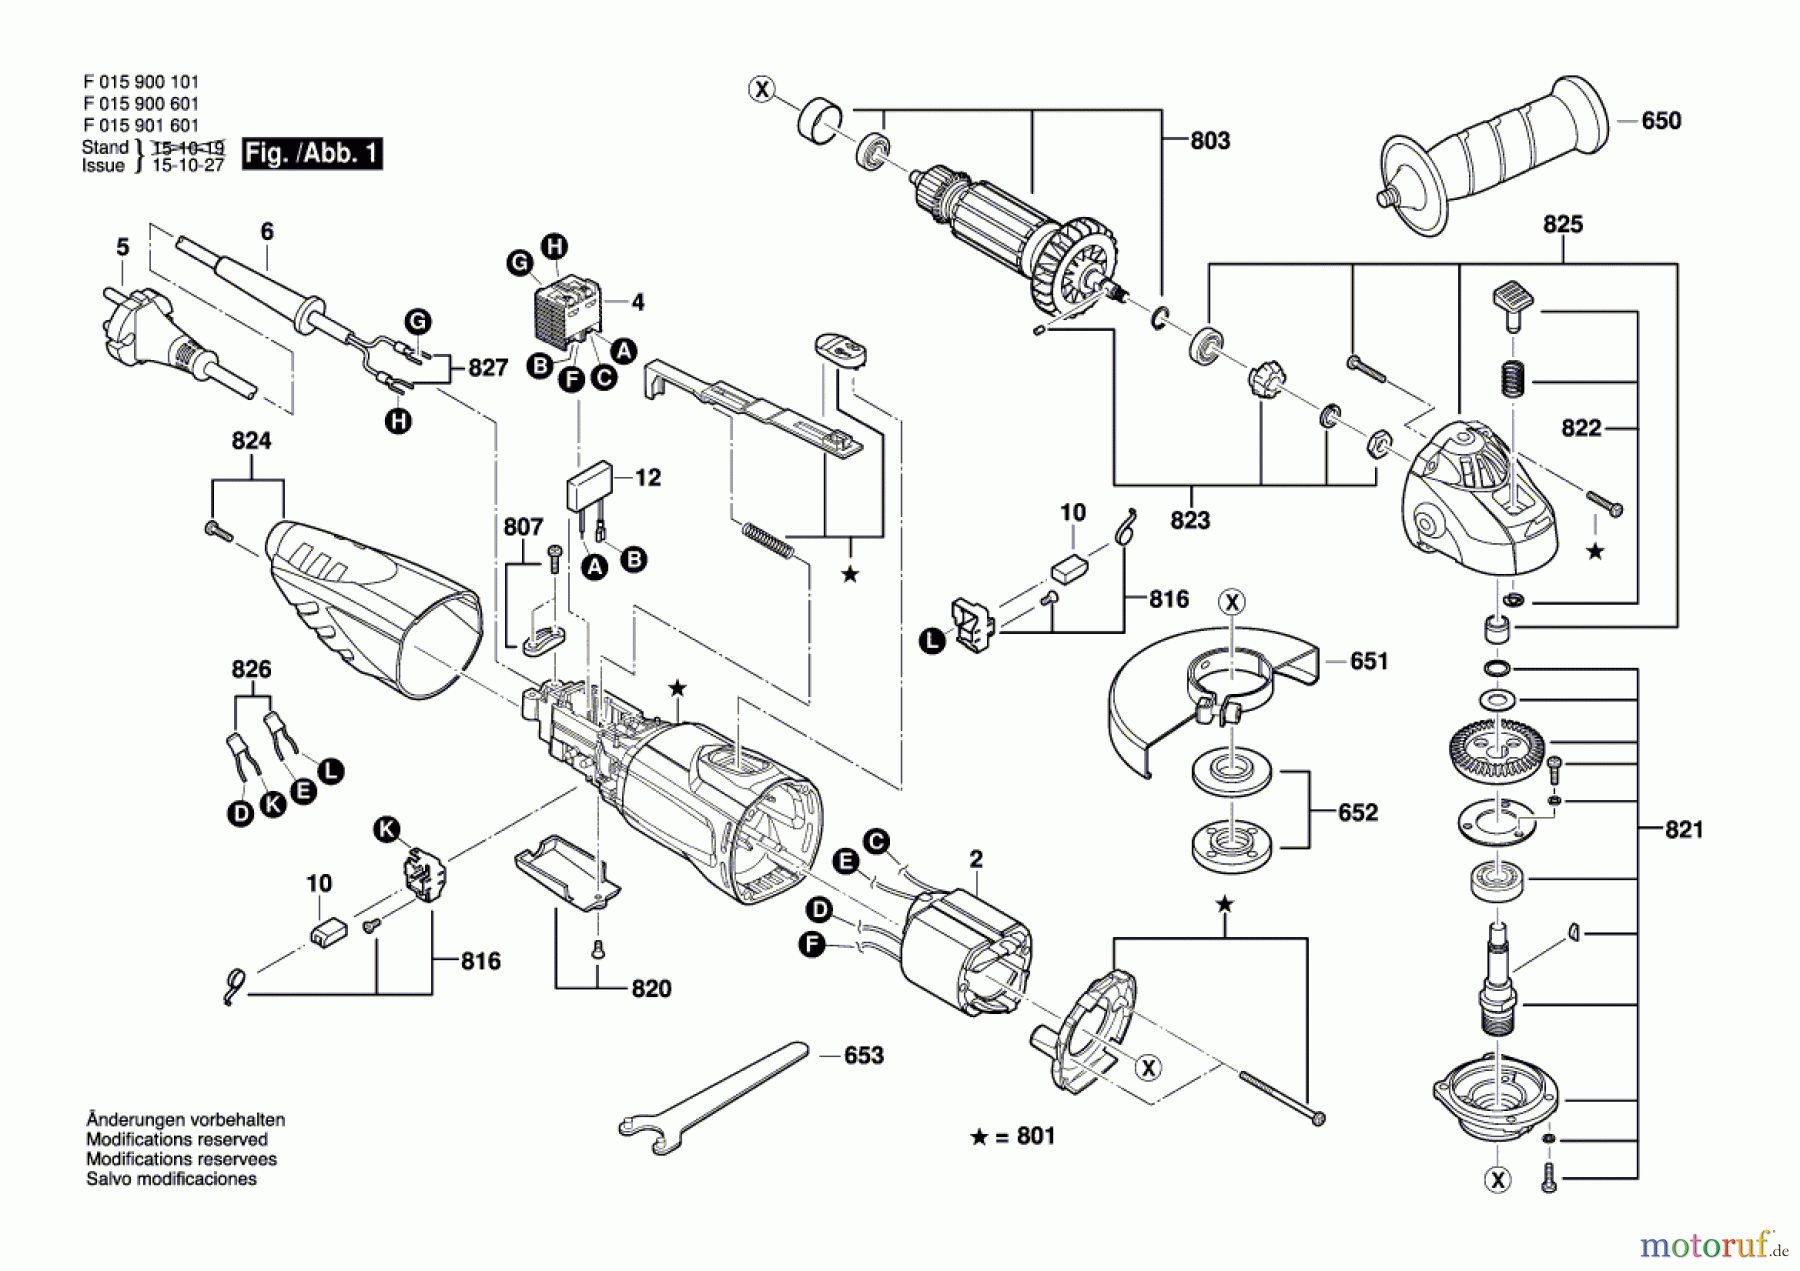  Bosch Werkzeug Pw-Winkelschleifer 9006 Seite 1